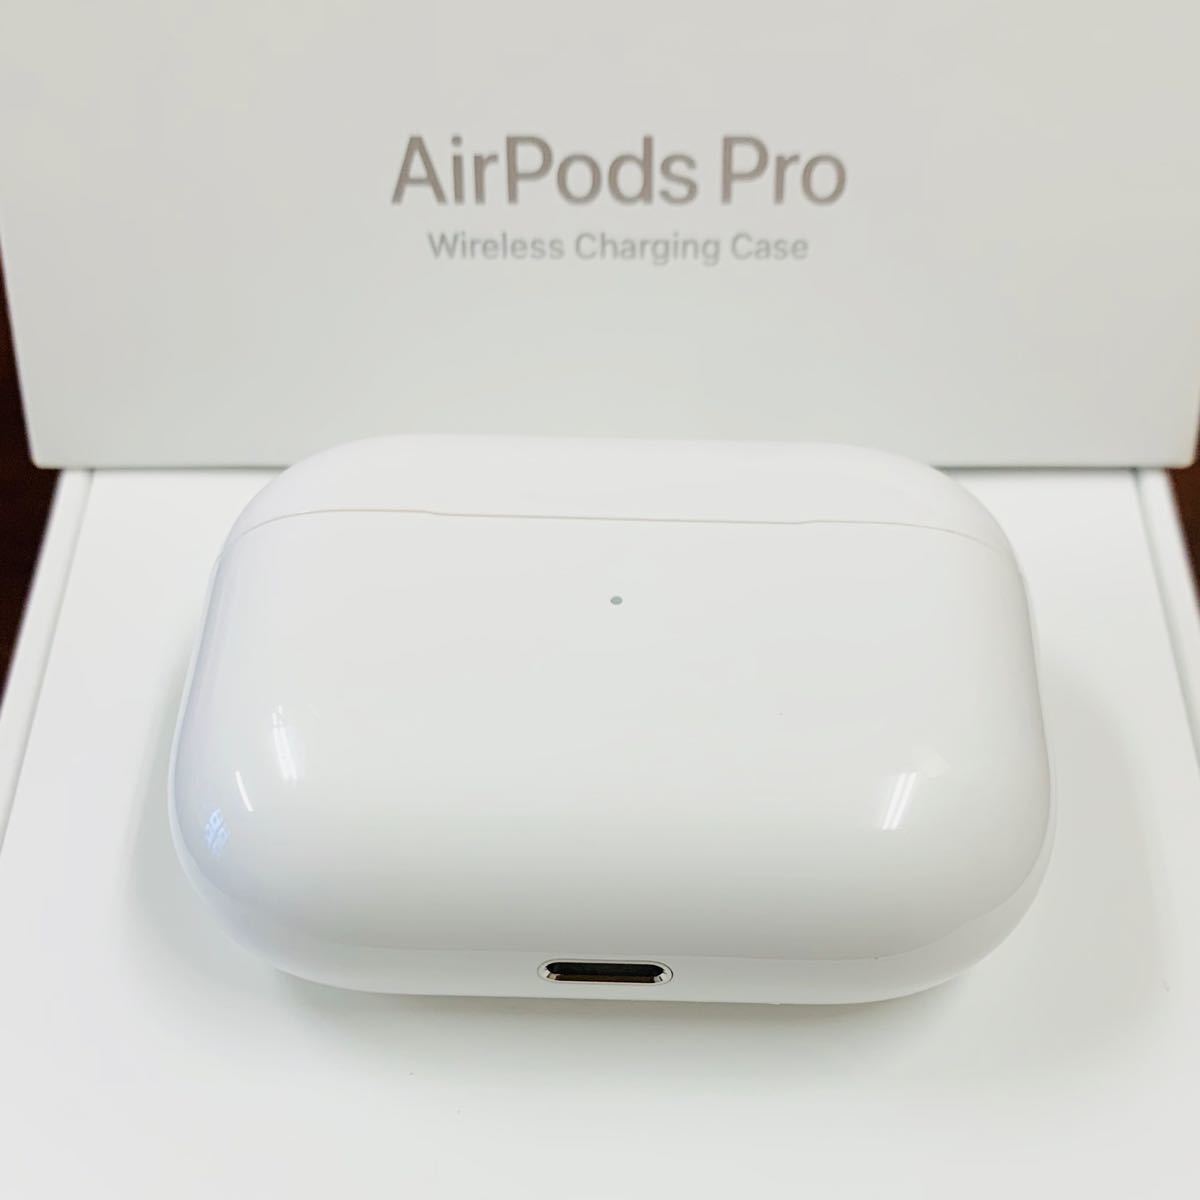 オーディオ機器 イヤフォン メール便指定可能 AirPods Pro 第一世代 ケースあり ホワイト Apple 